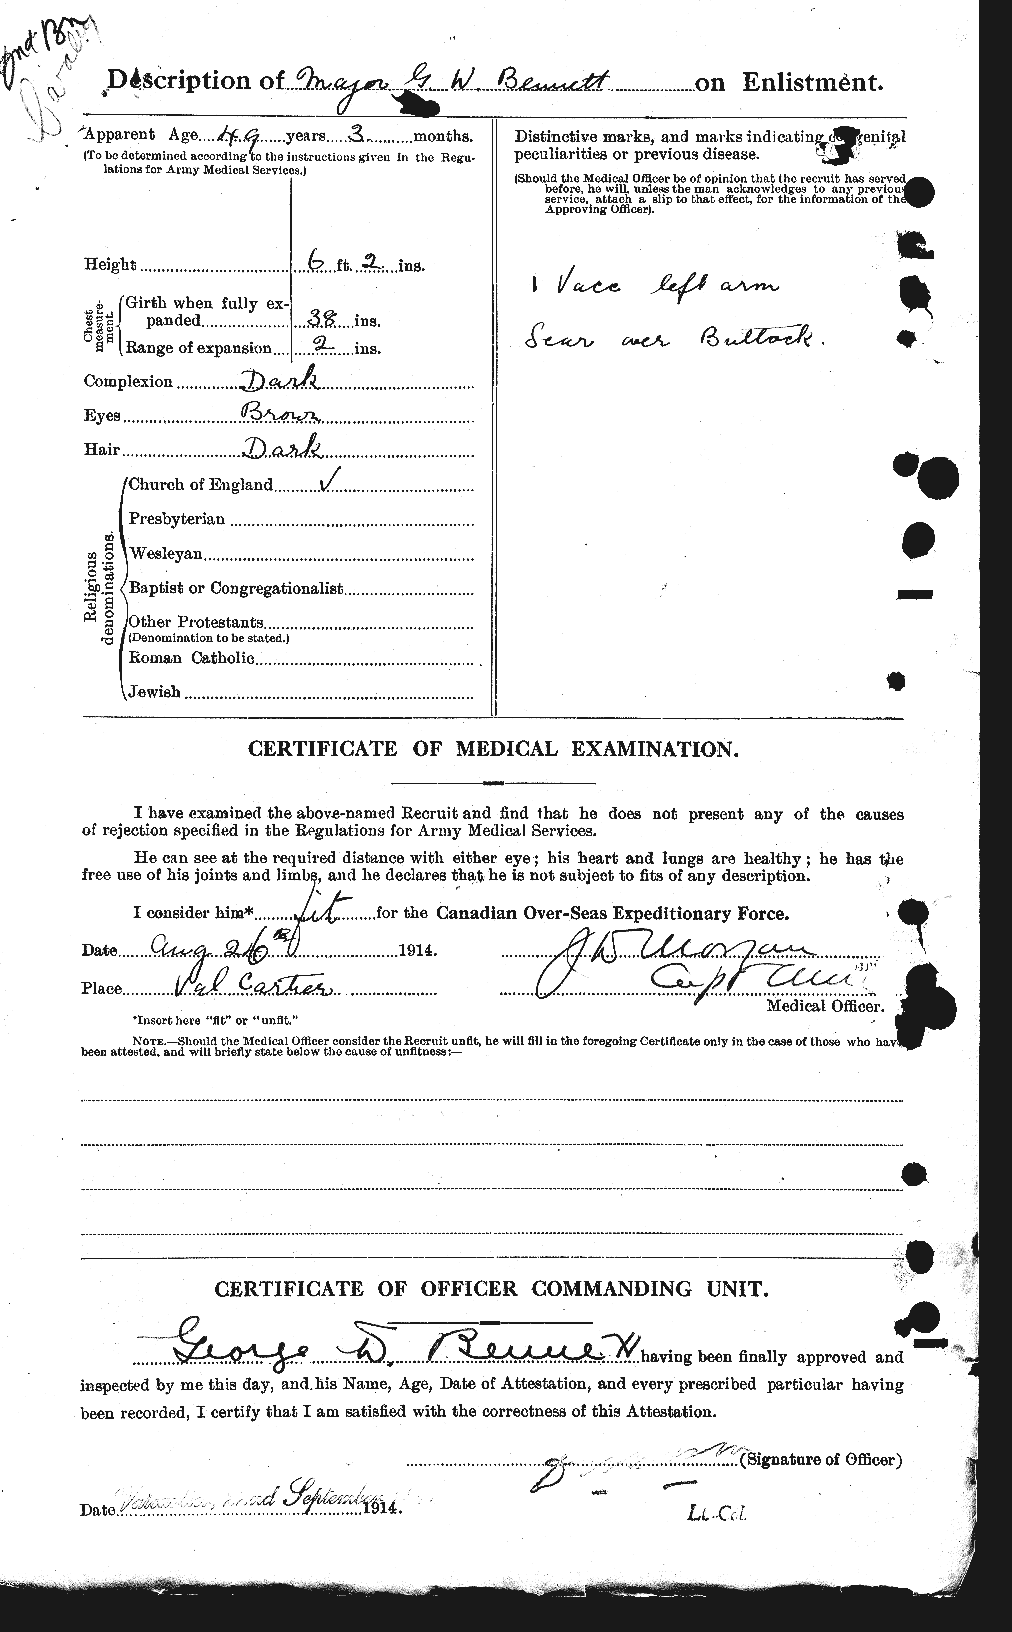 Dossiers du Personnel de la Première Guerre mondiale - CEC 238424b